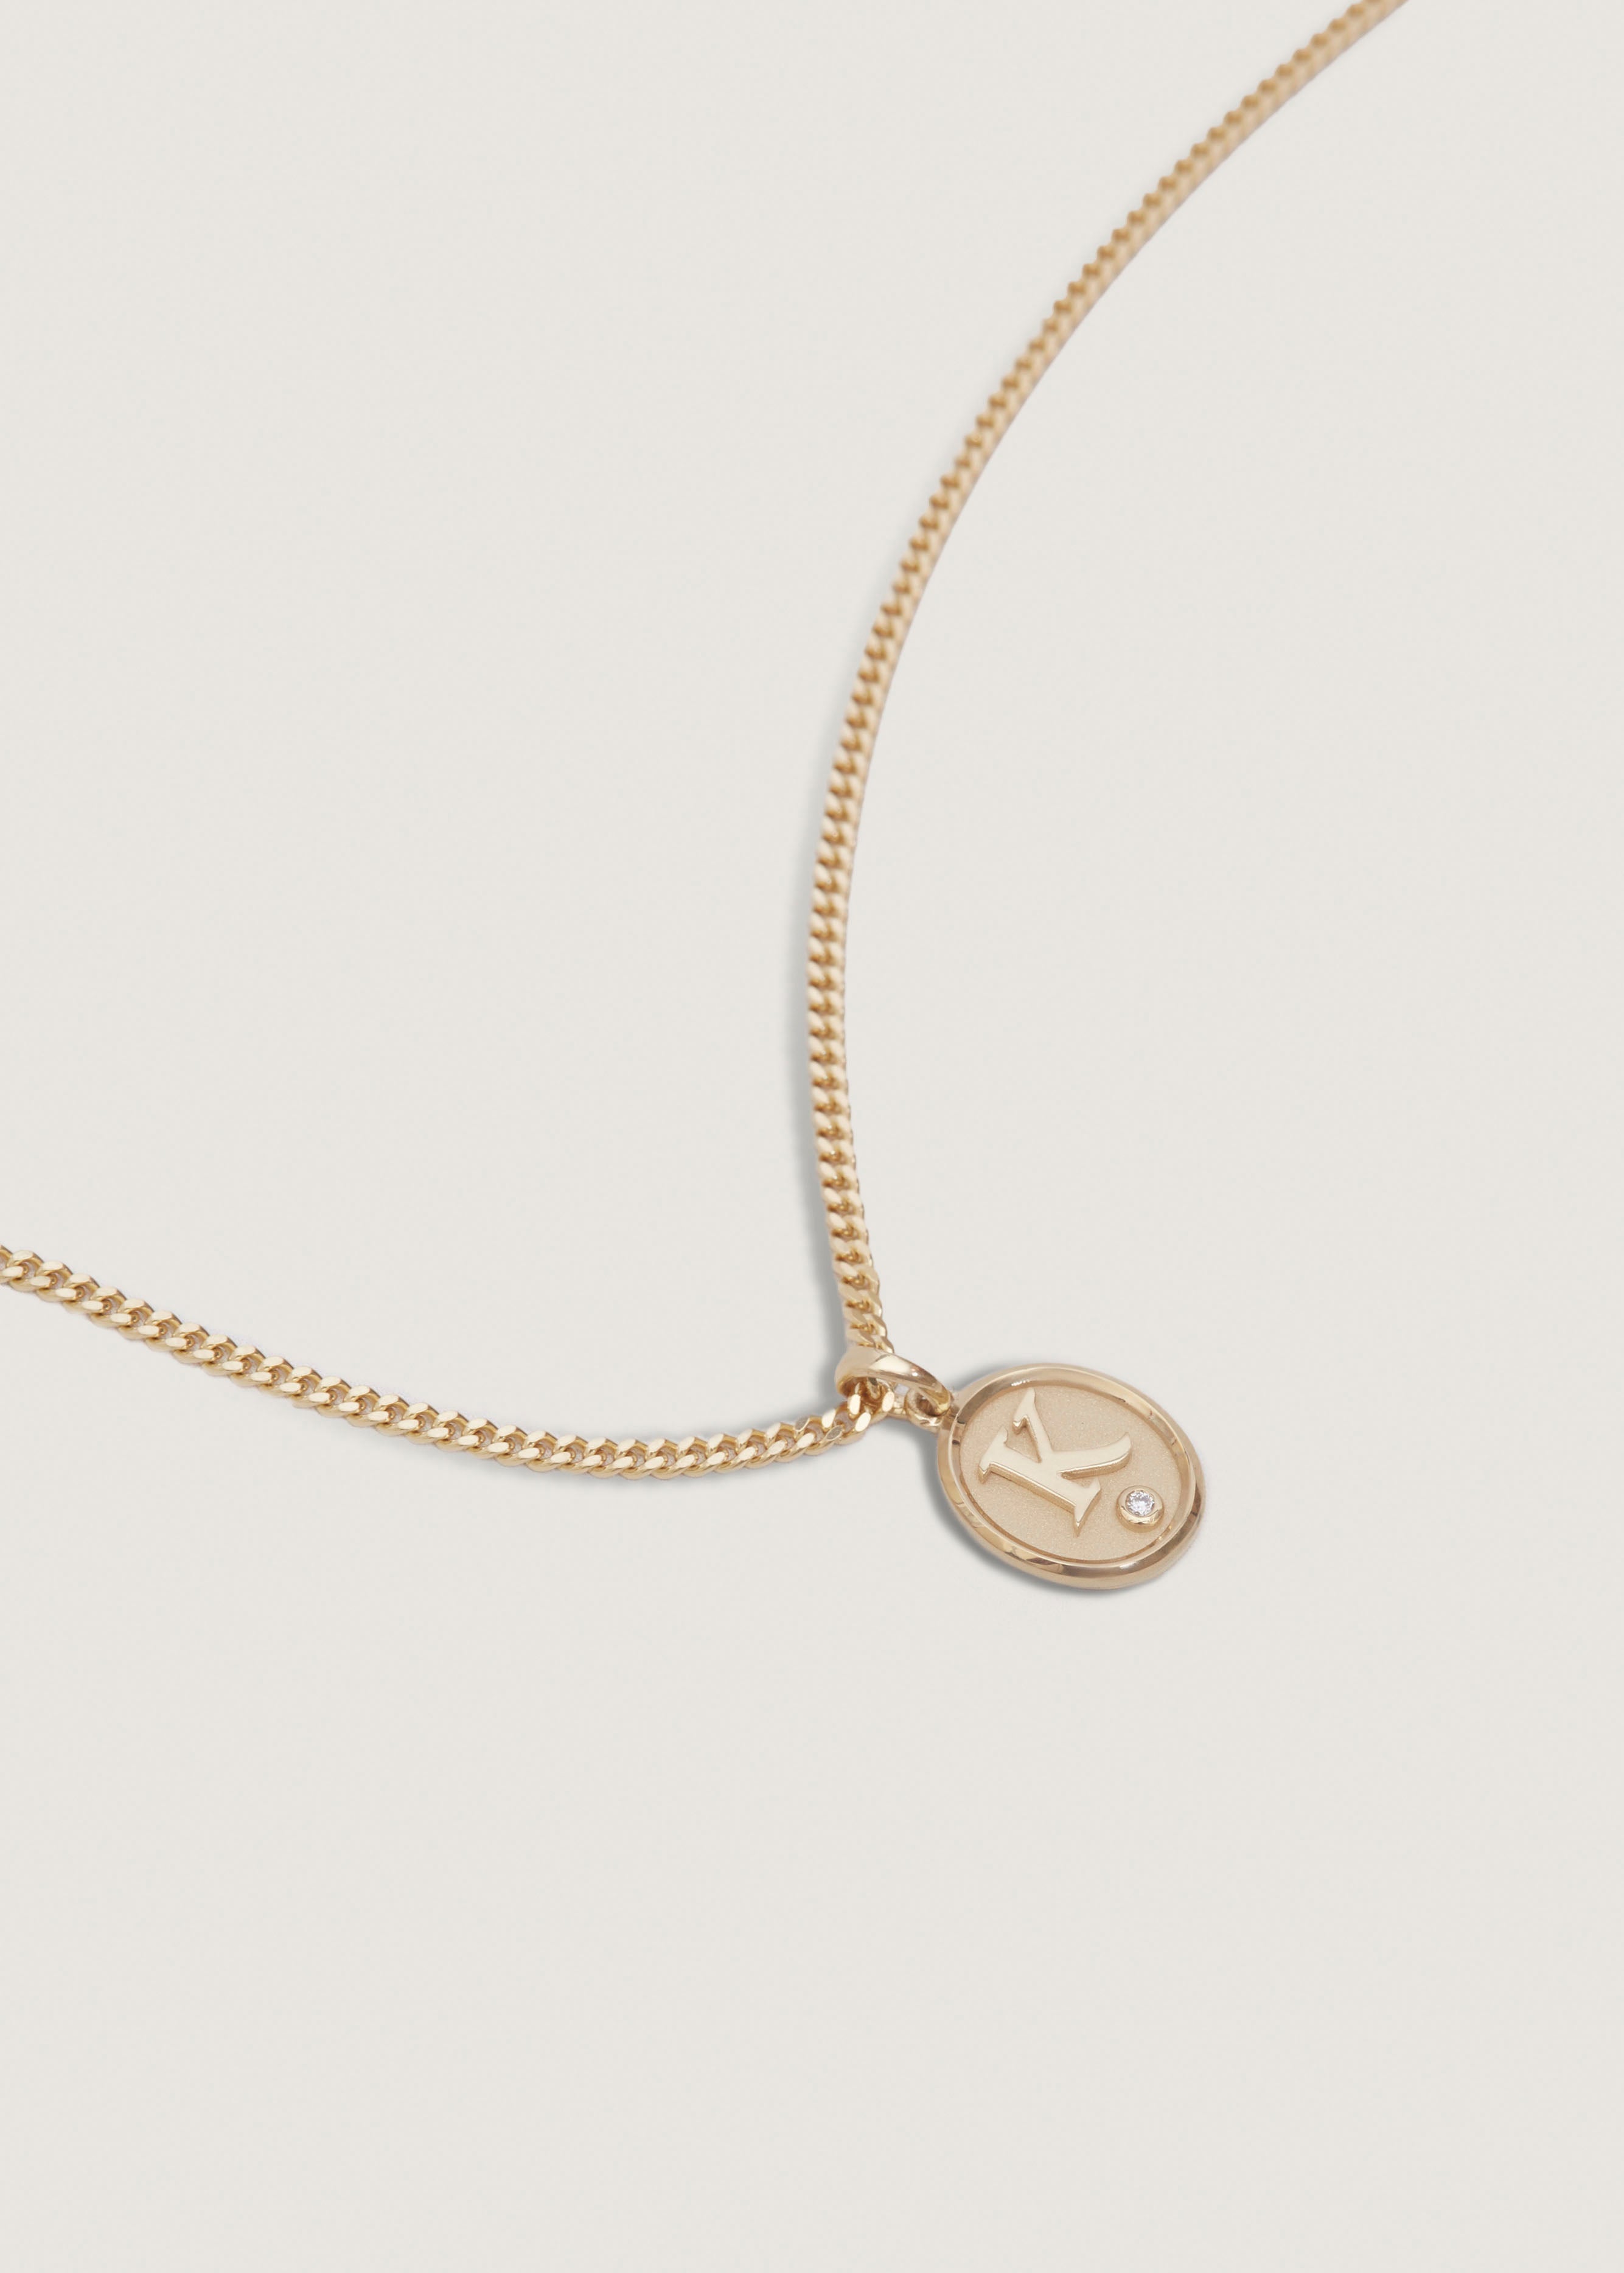 alt="Love Letter Diamond Necklace - Petite Curb Chain"